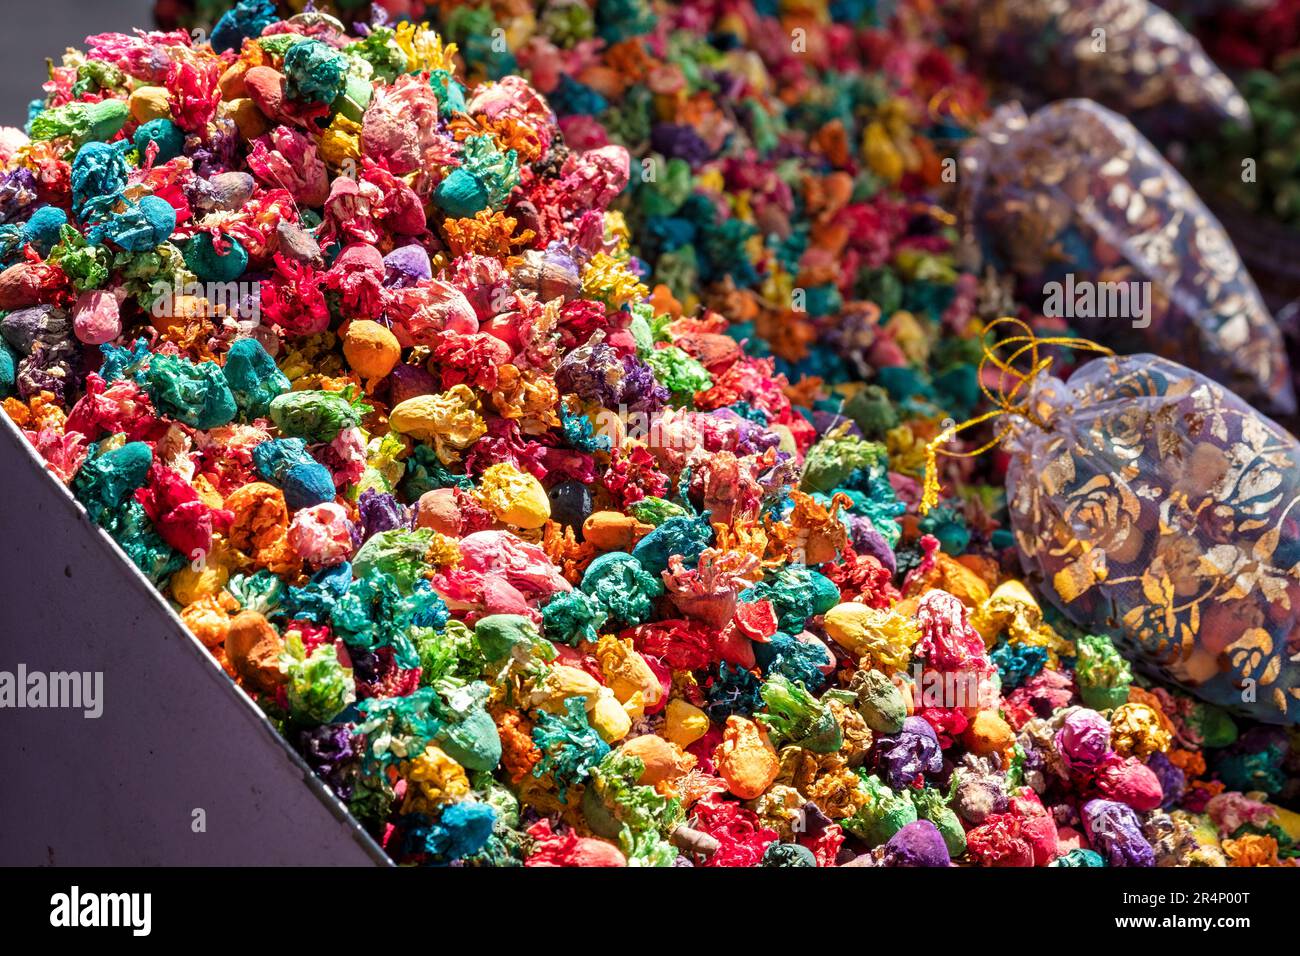 Une image en gros plan de fleurs séchées colorées et pleines de soleil à l'extérieur d'un souk de plantes médicinales dans le marché de Mellah, Marrakech, Maroc. Banque D'Images